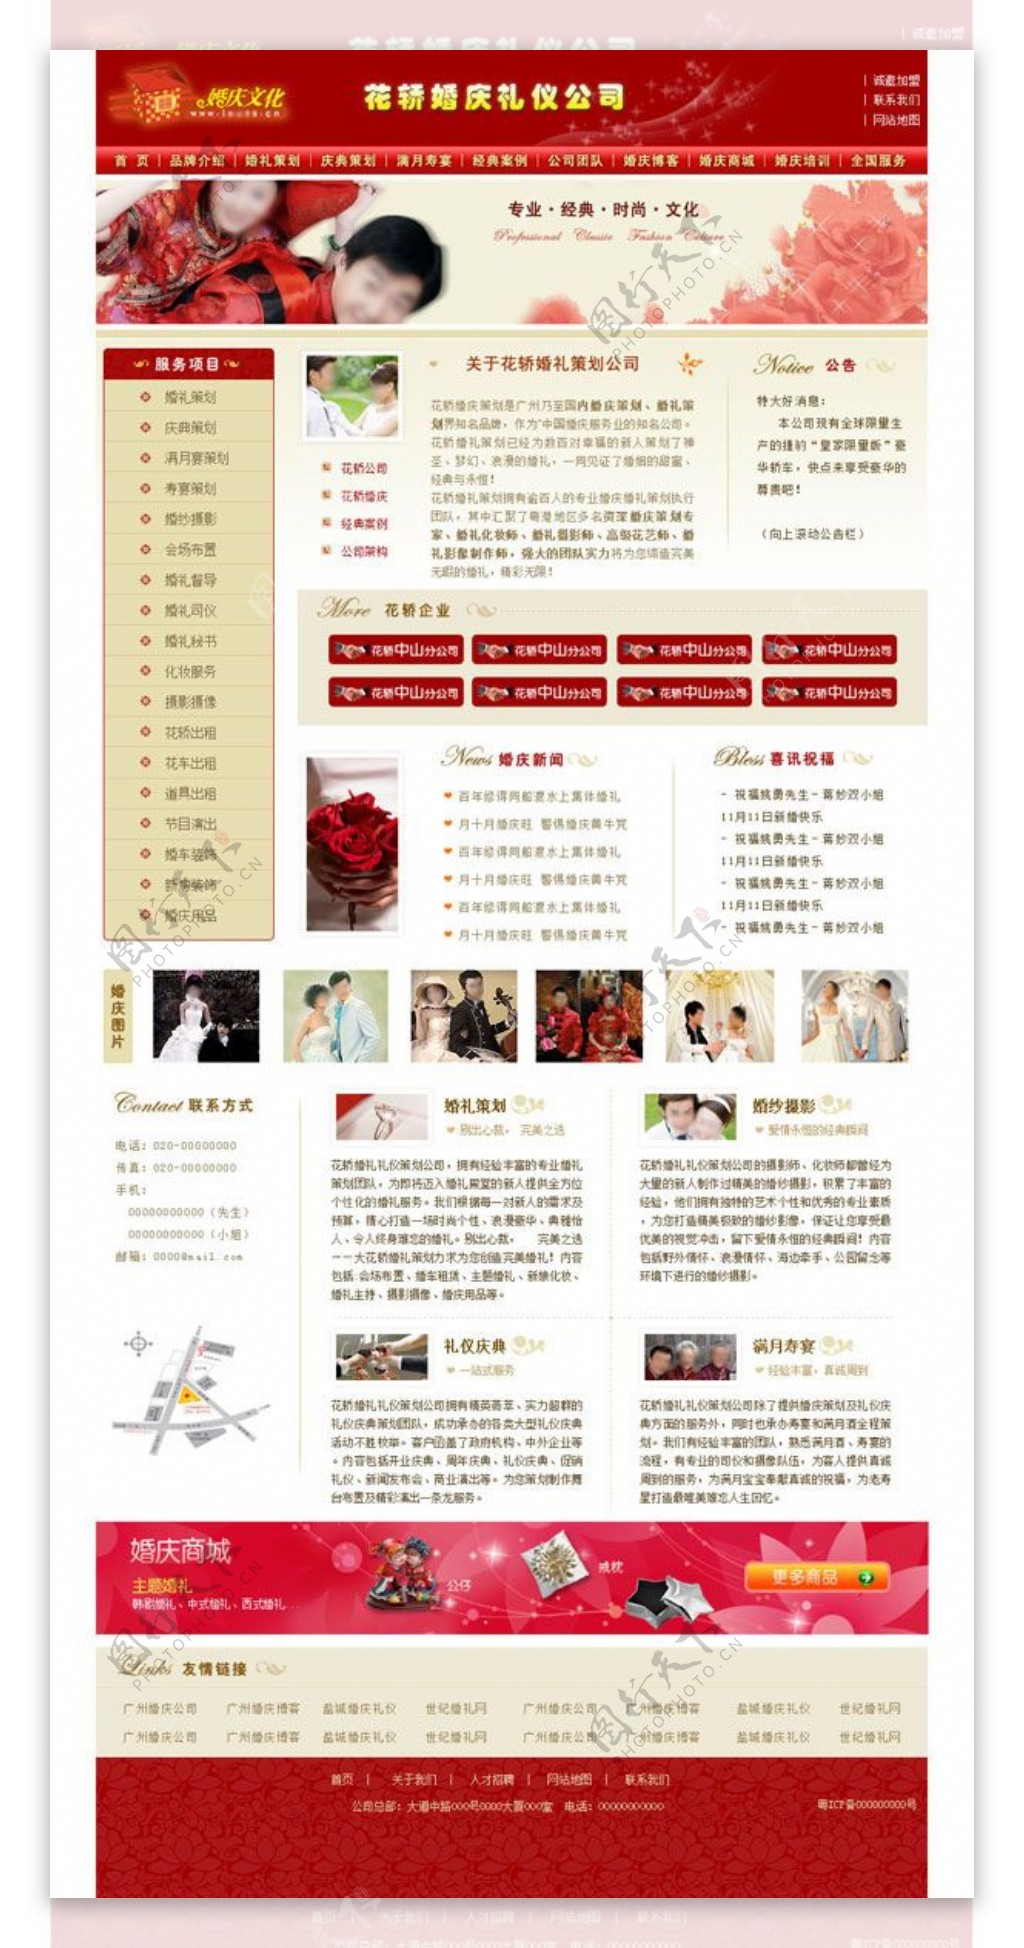 婚庆礼仪服务公司网站模板